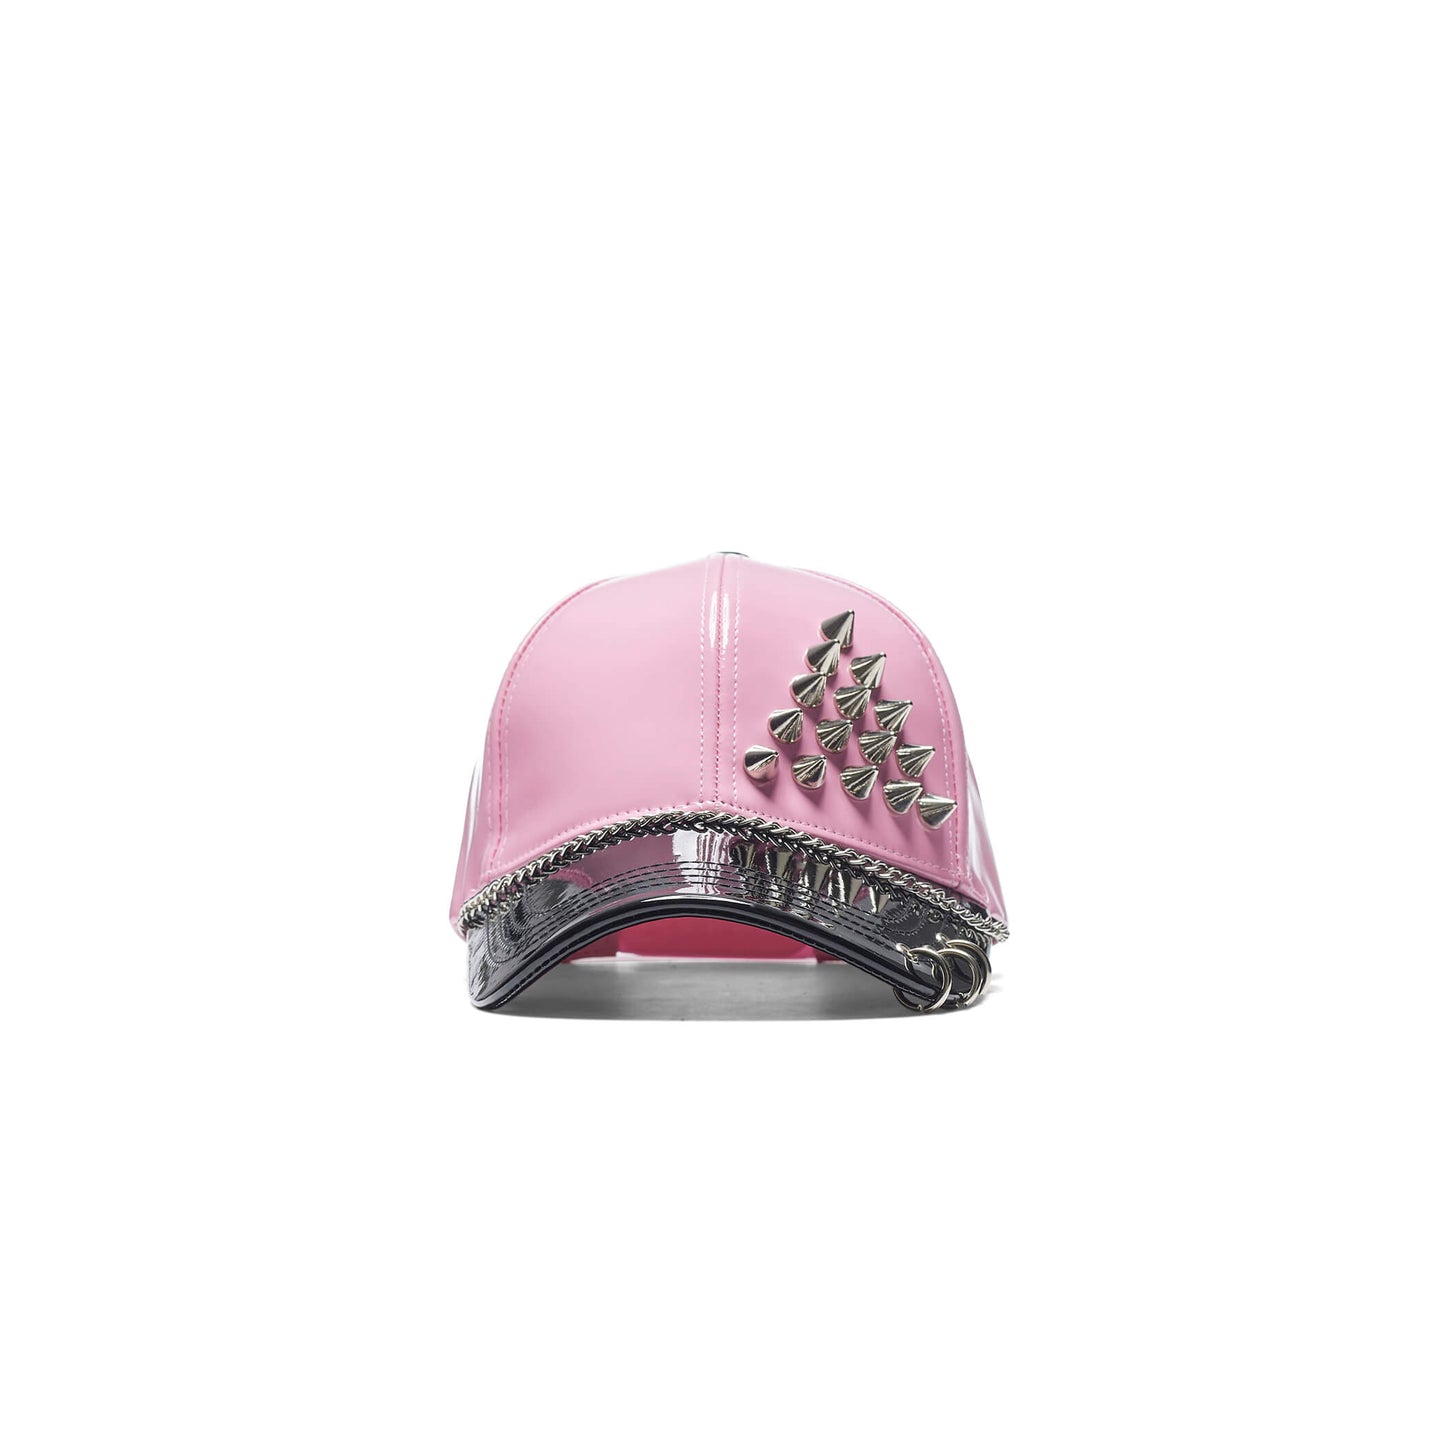 Malevolent Grunge Pink Cap - Accessories - KOI Footwear - Pink - Front View